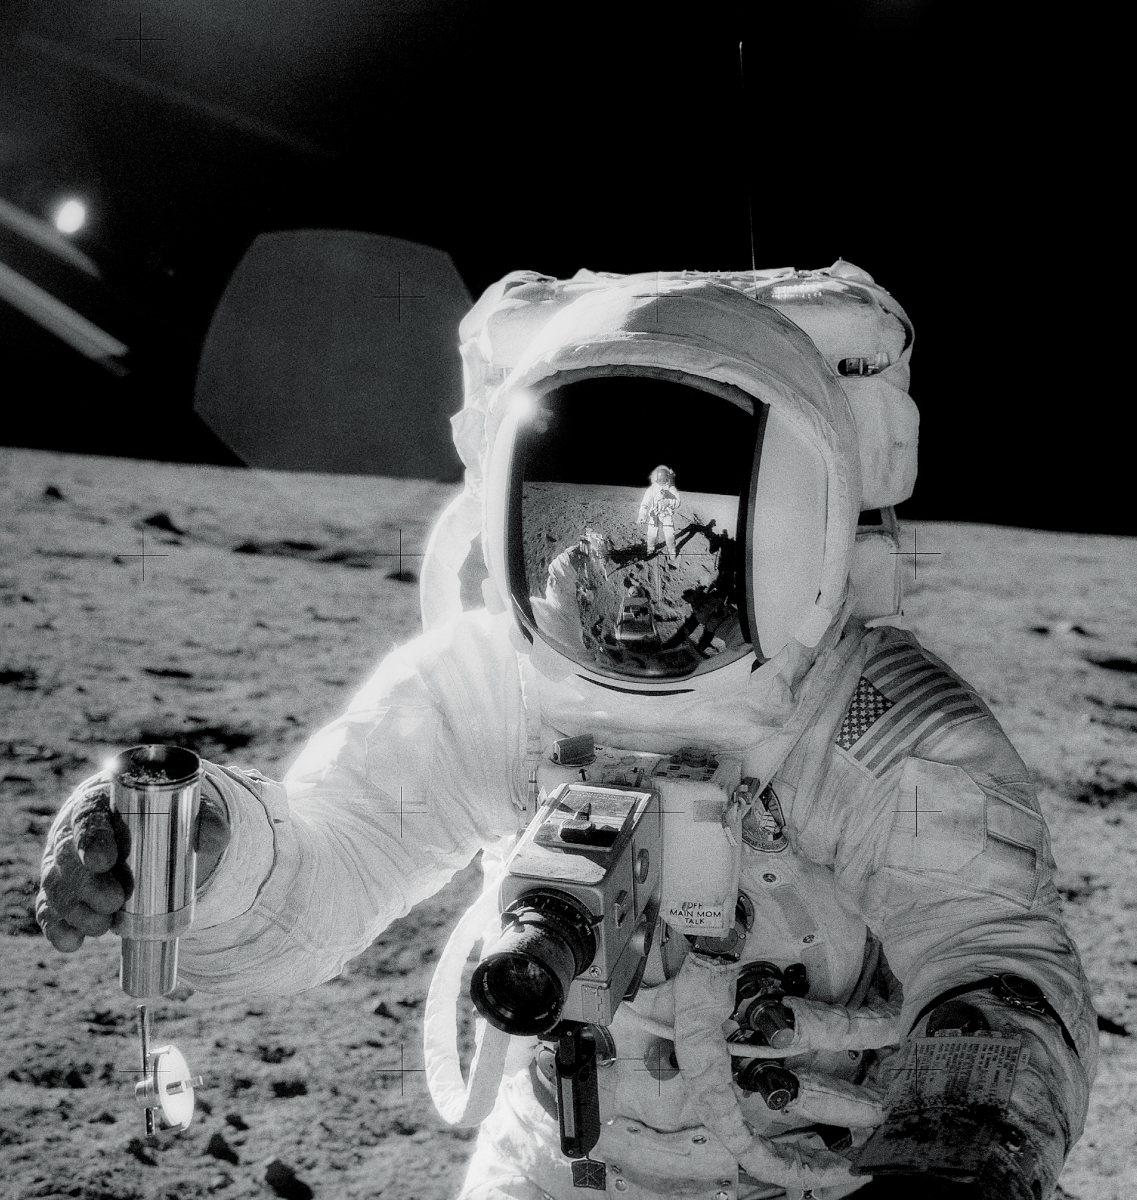 Apollo 12 moon